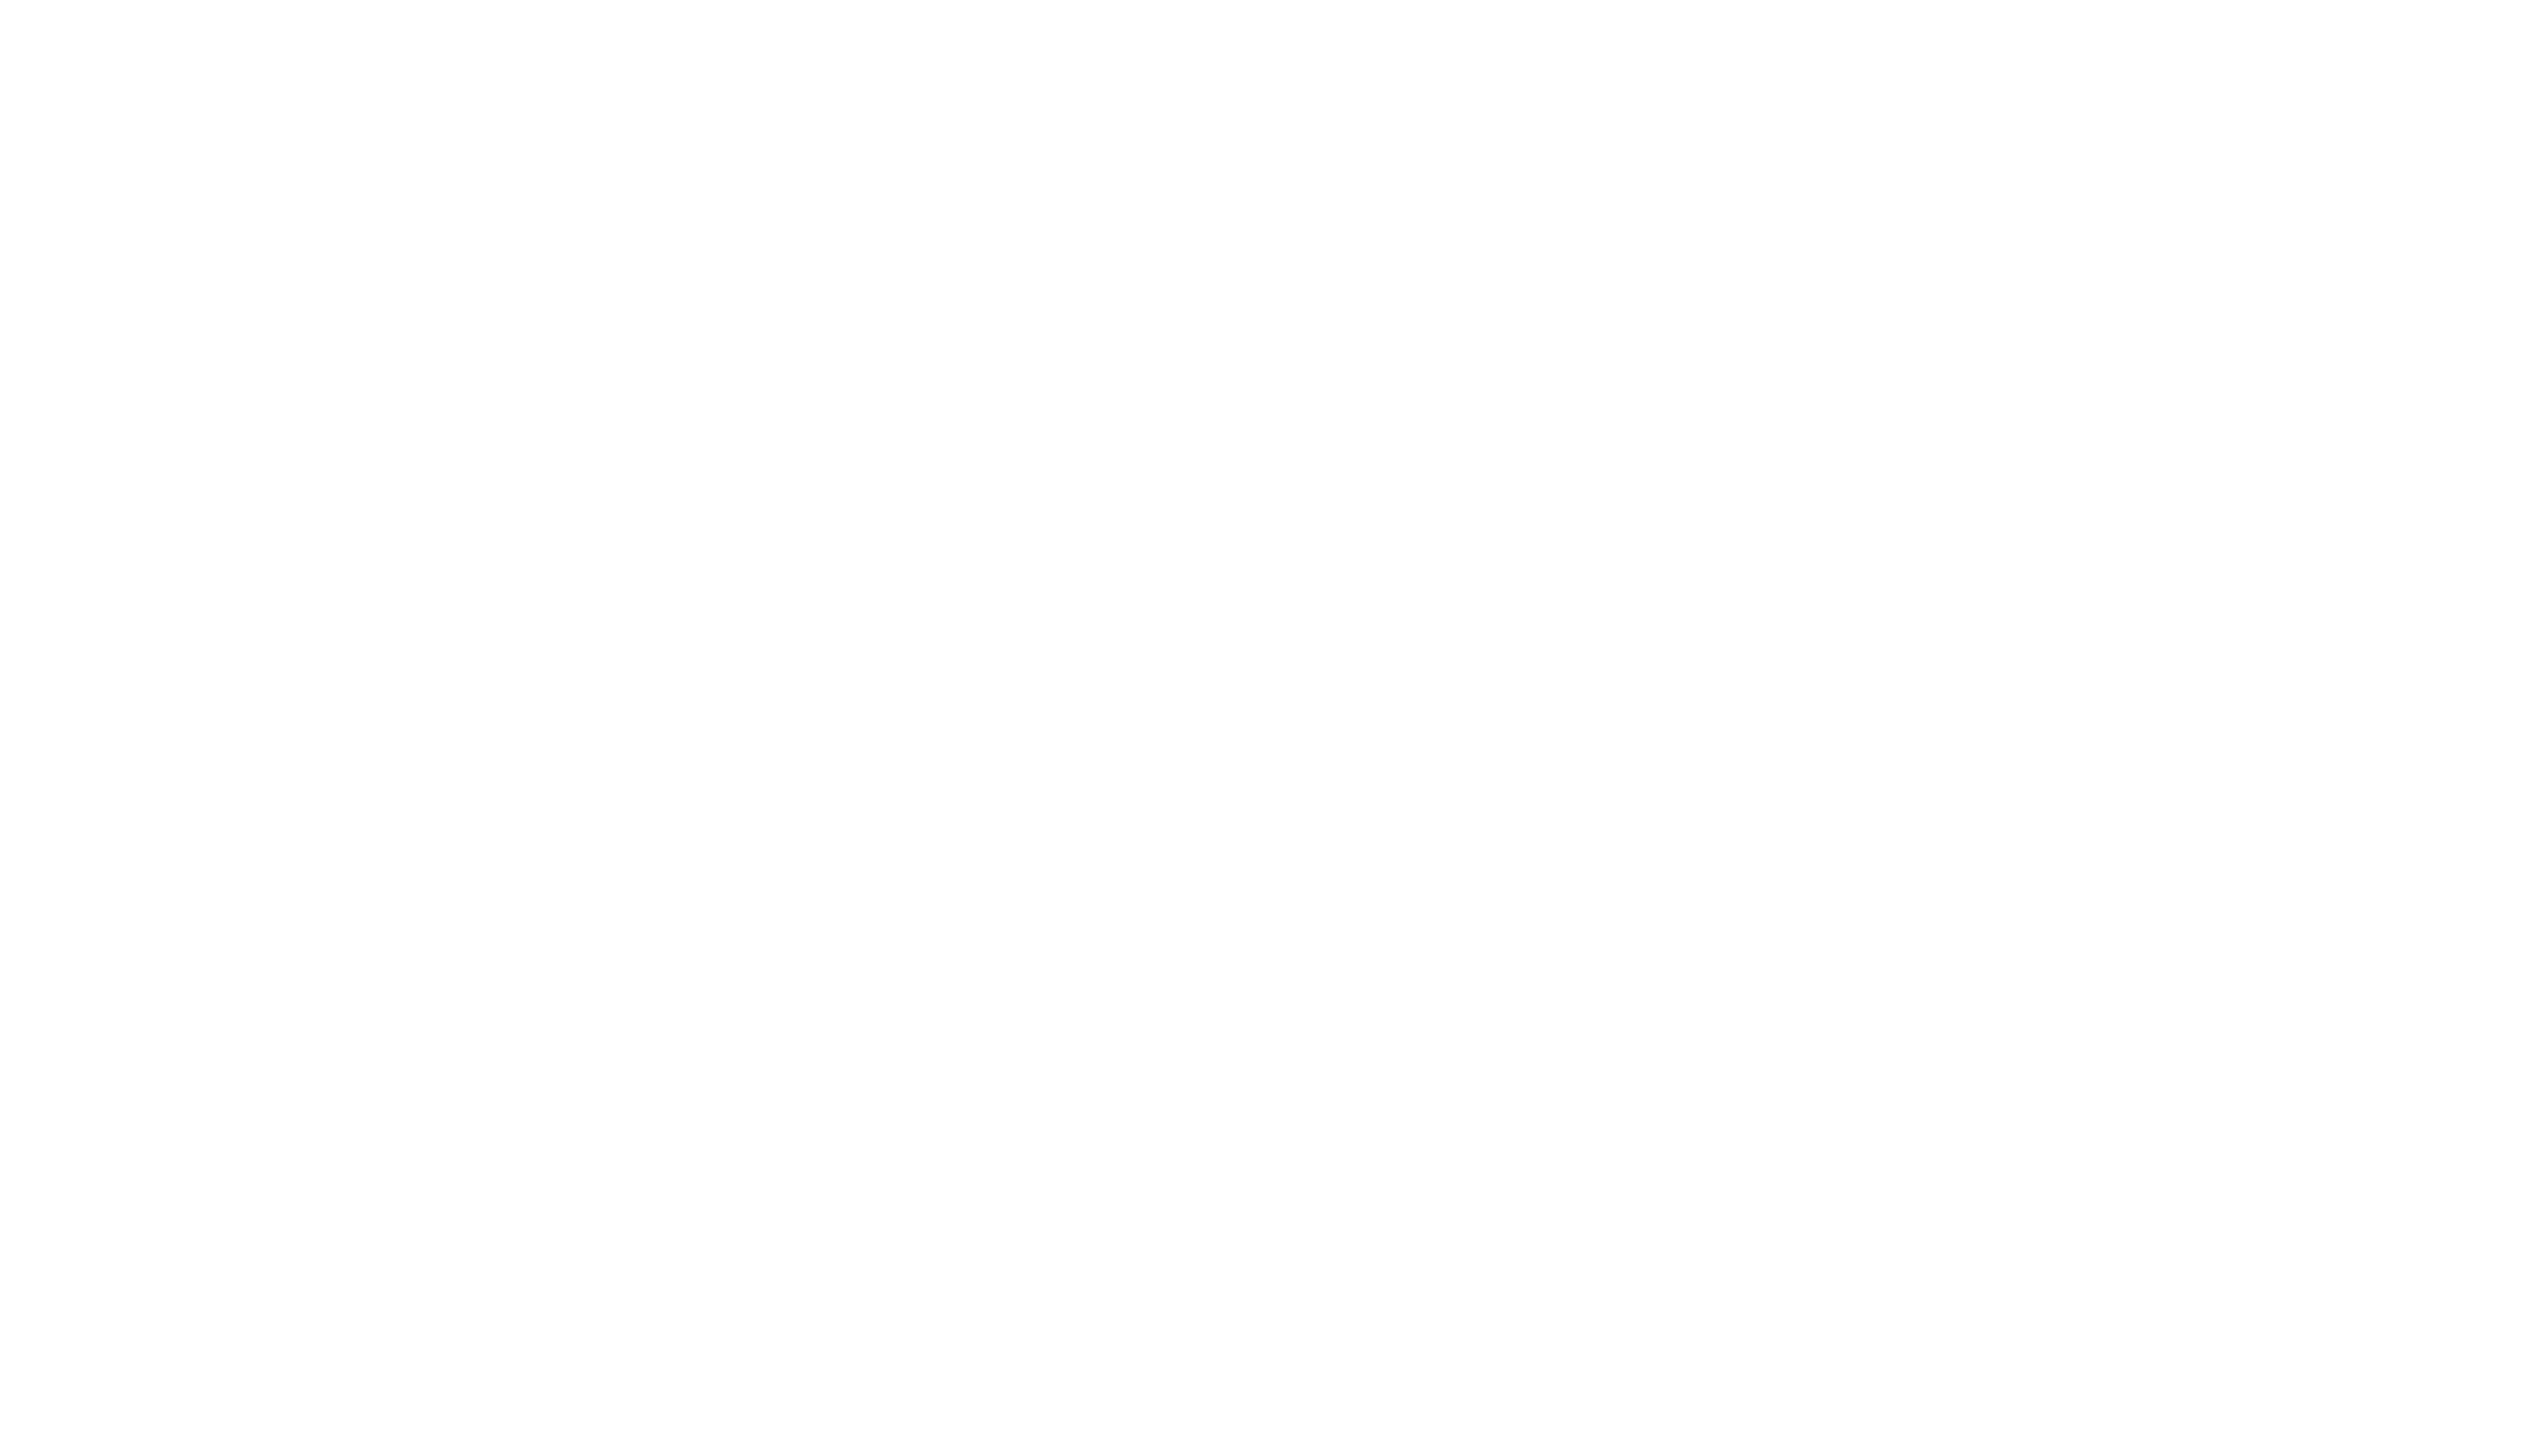 Las Carolinas